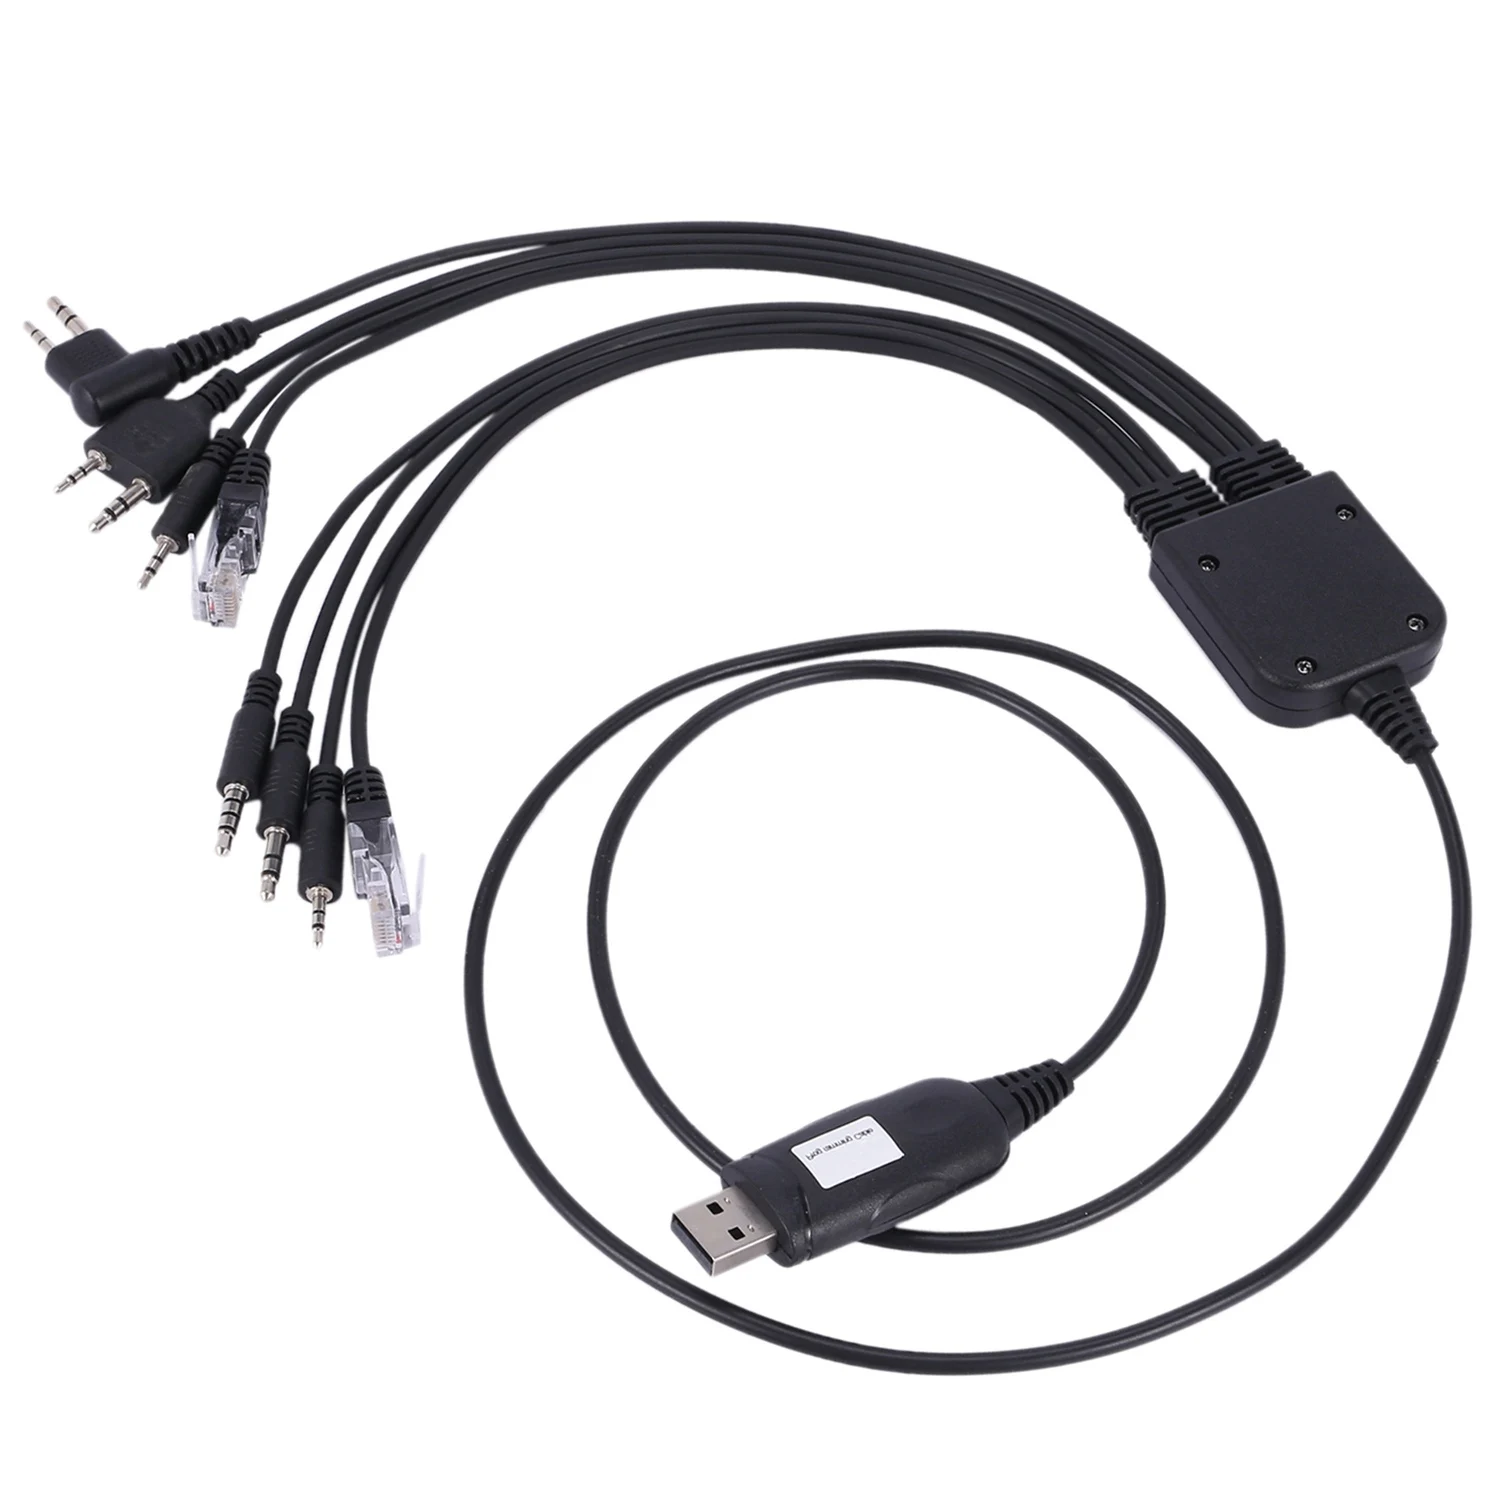 

Новый USB-кабель 8 в 1 для программирования kenwood baofeng motorola yaesu для icom Handy walkie talkie, автомобильное радио, CD программное обеспечение